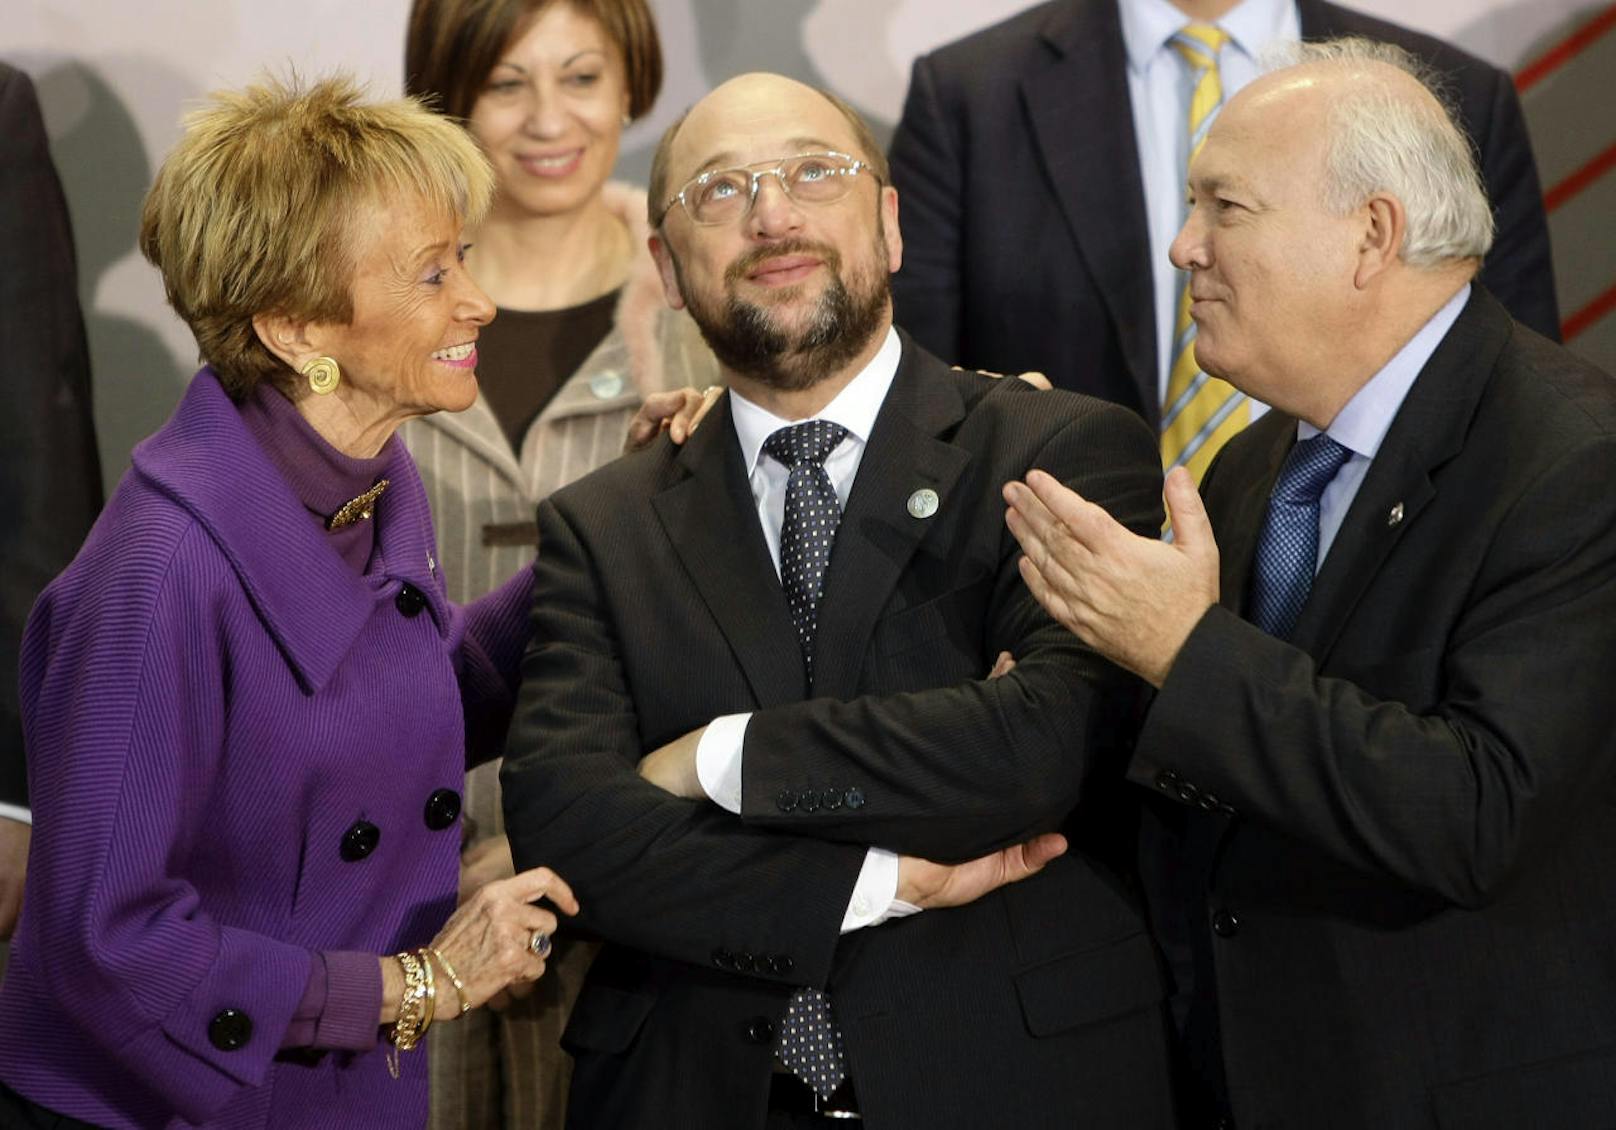 3. Dezember 2009: Martin Schulz bei der Tagung der europäischen Sozialdemokraten in Madrid